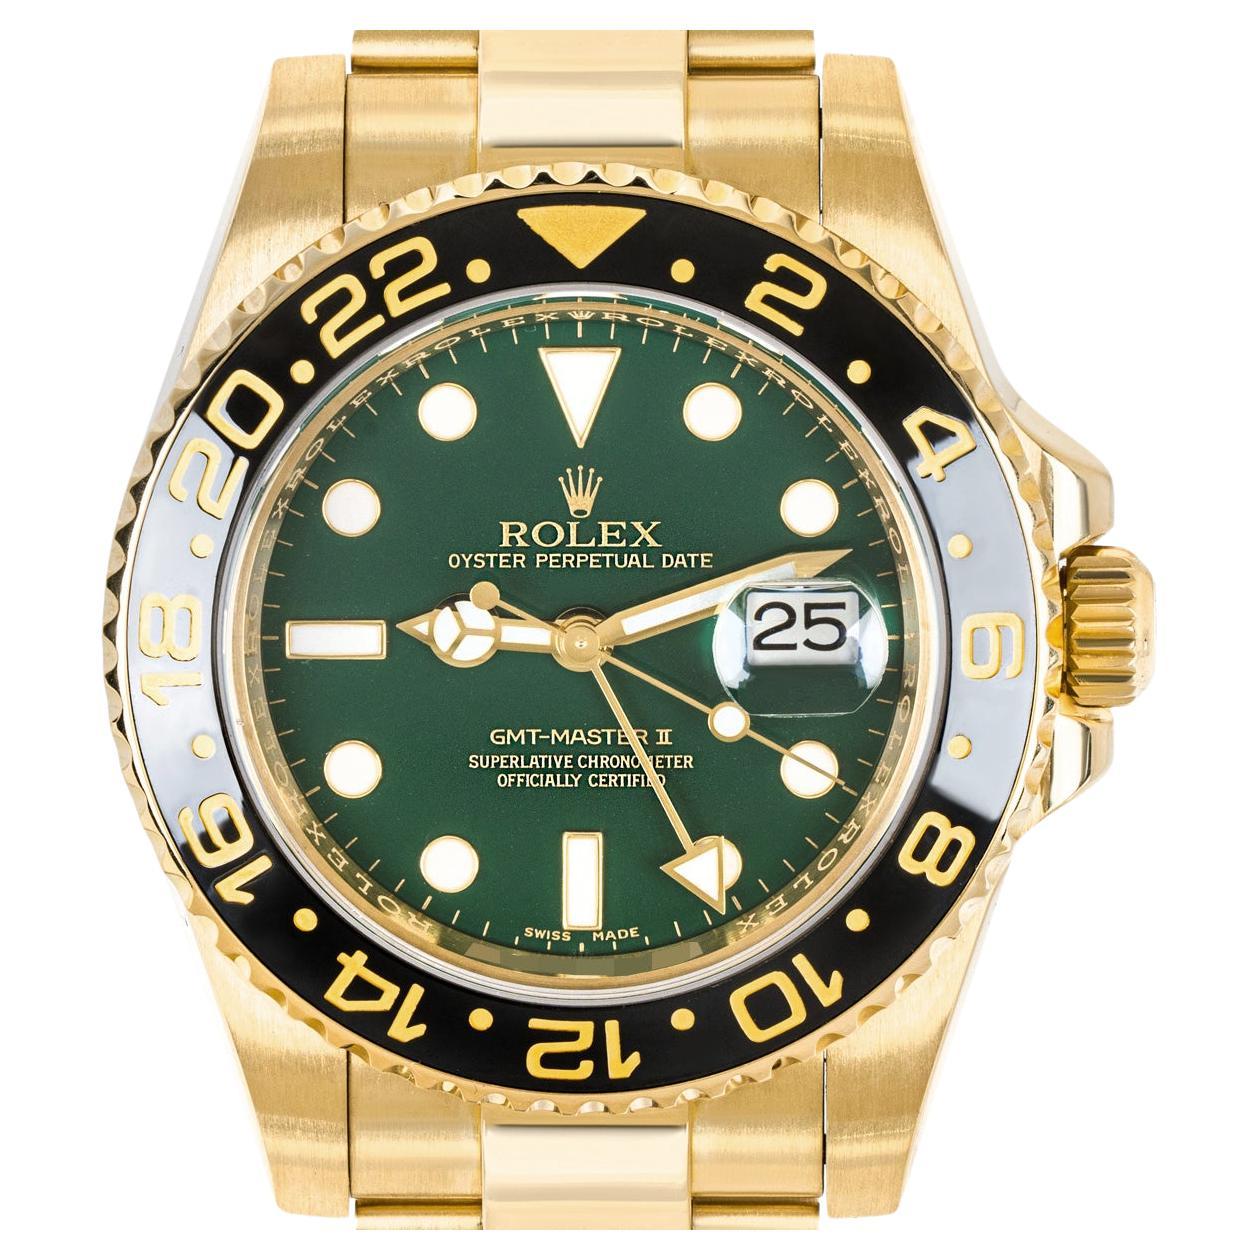 Montre-bracelet GMT-Master pour homme, en or jaune 18 carats, fabriquée par Rolex. Elle présente un cadran vert distinctif avec des index appliqués en or et un guichet de date à 3 heures. Le cadran est complété par une lunette tournante